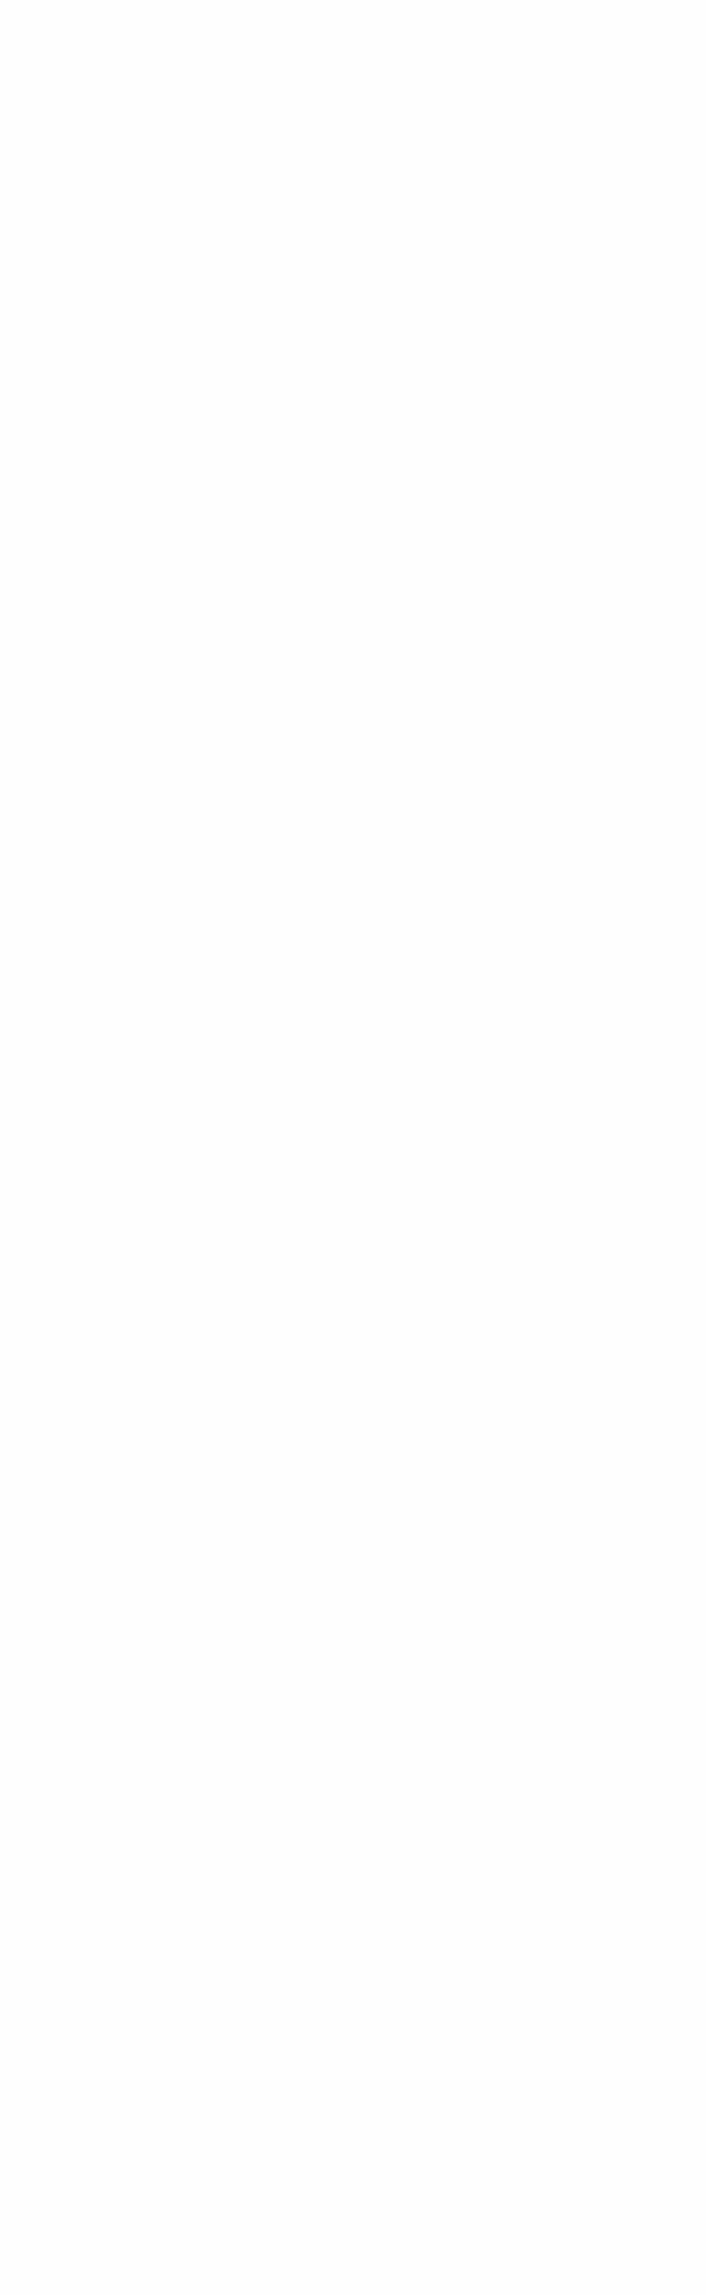 Årets albumSeinabo Sey – I’m a DreamÅrets alternativa popSarah Klang – Love in The Milky WayÅrets artistZ.E.Årets barnalbumGullan Bornemark – Mina egna favoriterÅrets dansbandBlender – Gambla litegrannÅrets elektro/dansNeneh Cherry – Broken PoliticsÅrets folkmusikPer Gudmundson & Bengan Janson – HjeltamôsÅrets hiphopJireel – 18Årets hårdrock/metalTribulation – Down BelowÅrets jazzAmanda Ginsburg – Jag har funderat på en sakÅrets klassiskaZilliacus, Raitinen, Forsberg – Amanda Maier: Volume 3Årets kompositörLudwig Göransson – Childish Gambino m.fl.Årets låtRobyn – Missing UÅrets musikvideoGustaf Holtenäs – Jenny Wilson – Rapin*Årets nykomlingImenella – Chagga, Moves RemixÅrets popRobyn – HoneyÅrets producentSimon Superti – Adel, Dani MÅrets rockHurula – Oss är alltÅrets textförfattareSeinabo Sey – I’m a DreamÅrets visa/singer-songwriterSlowgold – MörkareÅrets hederspris – Avicii – Juryns motivering lyder:Årets hederspristagare var ovanligt självklar att utse. Han gjorde en popresa som var mer än spektakulär, den omfamnade hela världen. Från starten i ett rum i Stockholm till att hyllas av president Barack Obama. Mängder av hitsinglar som kommer att vara med oss för alltid. Grammynomineringar. Regeringens exportpris. Samarbeten med namn som Madonna och David Guetta. Mer än elva miljarder streams bara på Spotify. Och då skrapar vi ändå bara på ytan. Hans låtar, loopar och ljud är eviga. Årets hederspristagare vid Grammis 19 är GIVETVIS Tim ”Avicii” Bergling. Årets specialpris – Jan Hansson – Juryns motivering lyder:Årets hederspristagare är hämtad ur alla de kreatörer som verkar lite i skymundan i musikbranschen, men betyder så enormt mycket för slutresultatet. Pristagaren inledde sin musikbana 1973, samma år som Grammis tog en lång paus, och kunde därför inte då belönas för sina arbeten med allt från ABBA till Cornelis. Men i dag kan vi många år senare belöna honom för detta LIKSOM för hans centrala bidrag till även nuets fixstjärnor, som Lykke Li eller Bo Kaspers. Inte minst vill vi hylla honom för hans oförtrutna vision att hålla Sveriges mest mytomspunna musikstudio, Atlantis på Karlbergsvägen i Stockholm, igång och ytterst levande 60 år efter att studion först öppnades och 35 år efter att han själv tog över den. För sina insatser som tekniker, kreatör och entreprenör är 2019 års hederspristagare vid Grammis: Jan Hansson.